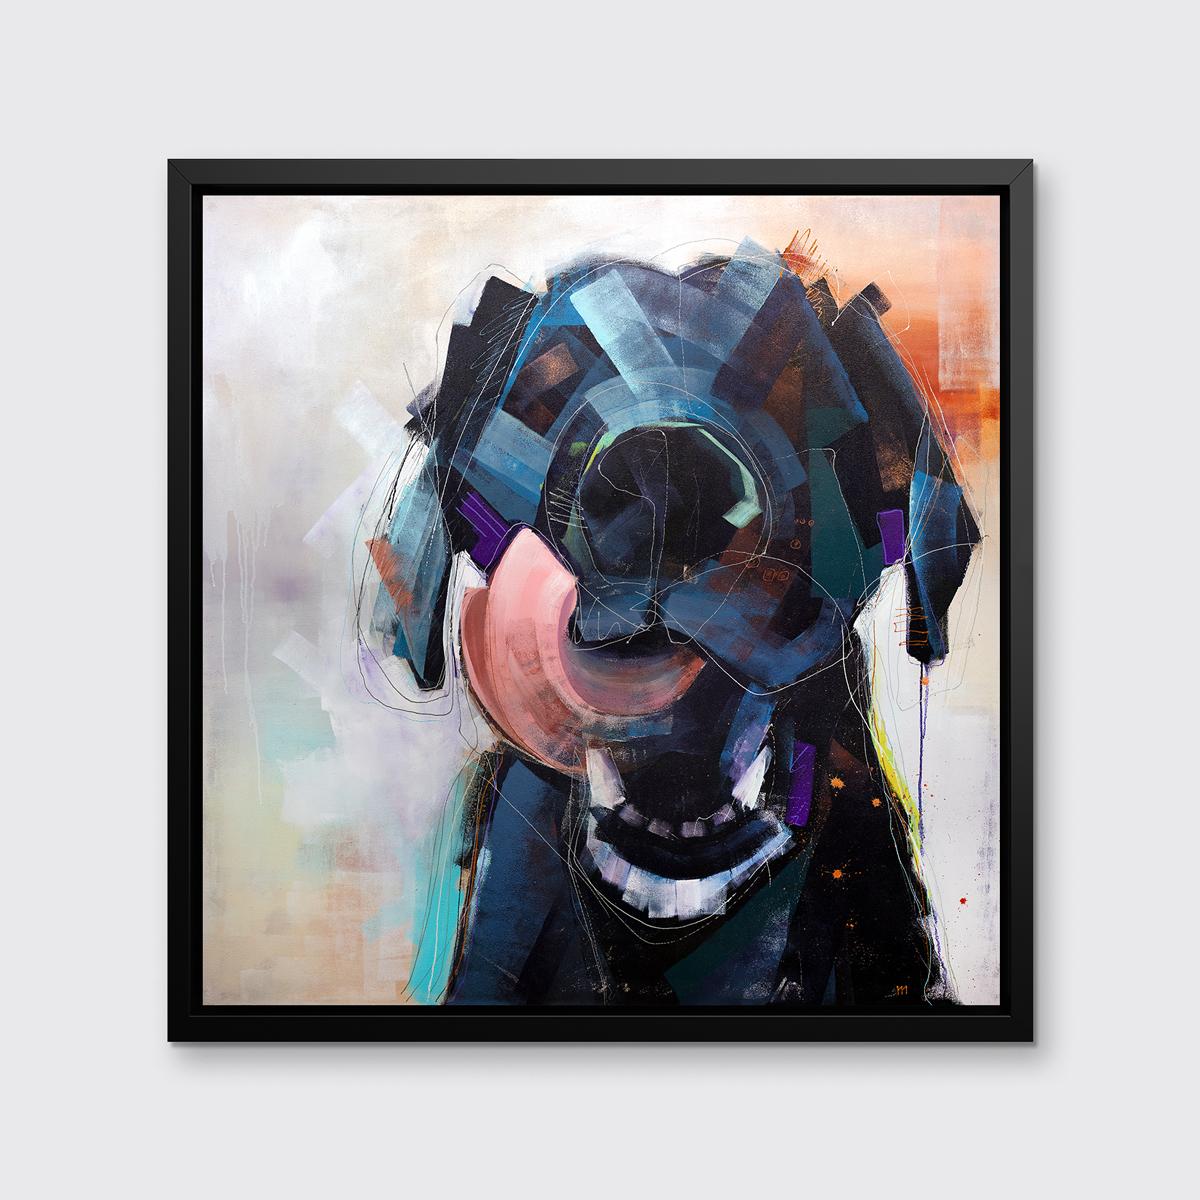 Dieser abstrahierte Druck eines Hundes des Künstlers Russell Miyaki zeichnet sich durch eine helle, farbenfrohe Palette und lockere, ausdrucksstarke und verspielte Elemente aus, um eine energiegeladene Komposition eines Hundes zu schaffen, der sich